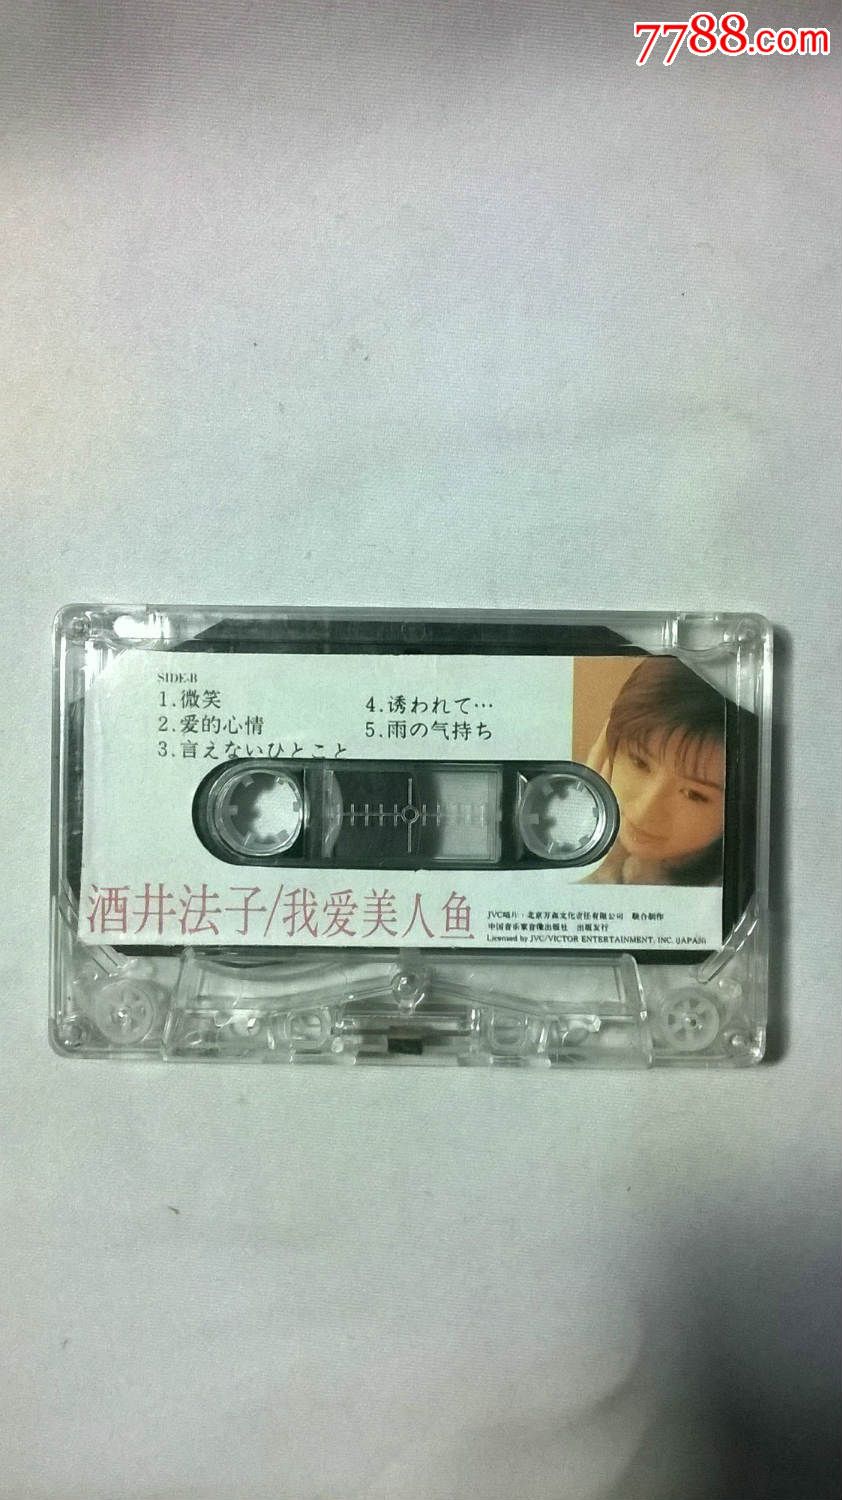 磁带酒井法子我爱美人鱼(歌词齐全)中国音乐家音像出版社1996年